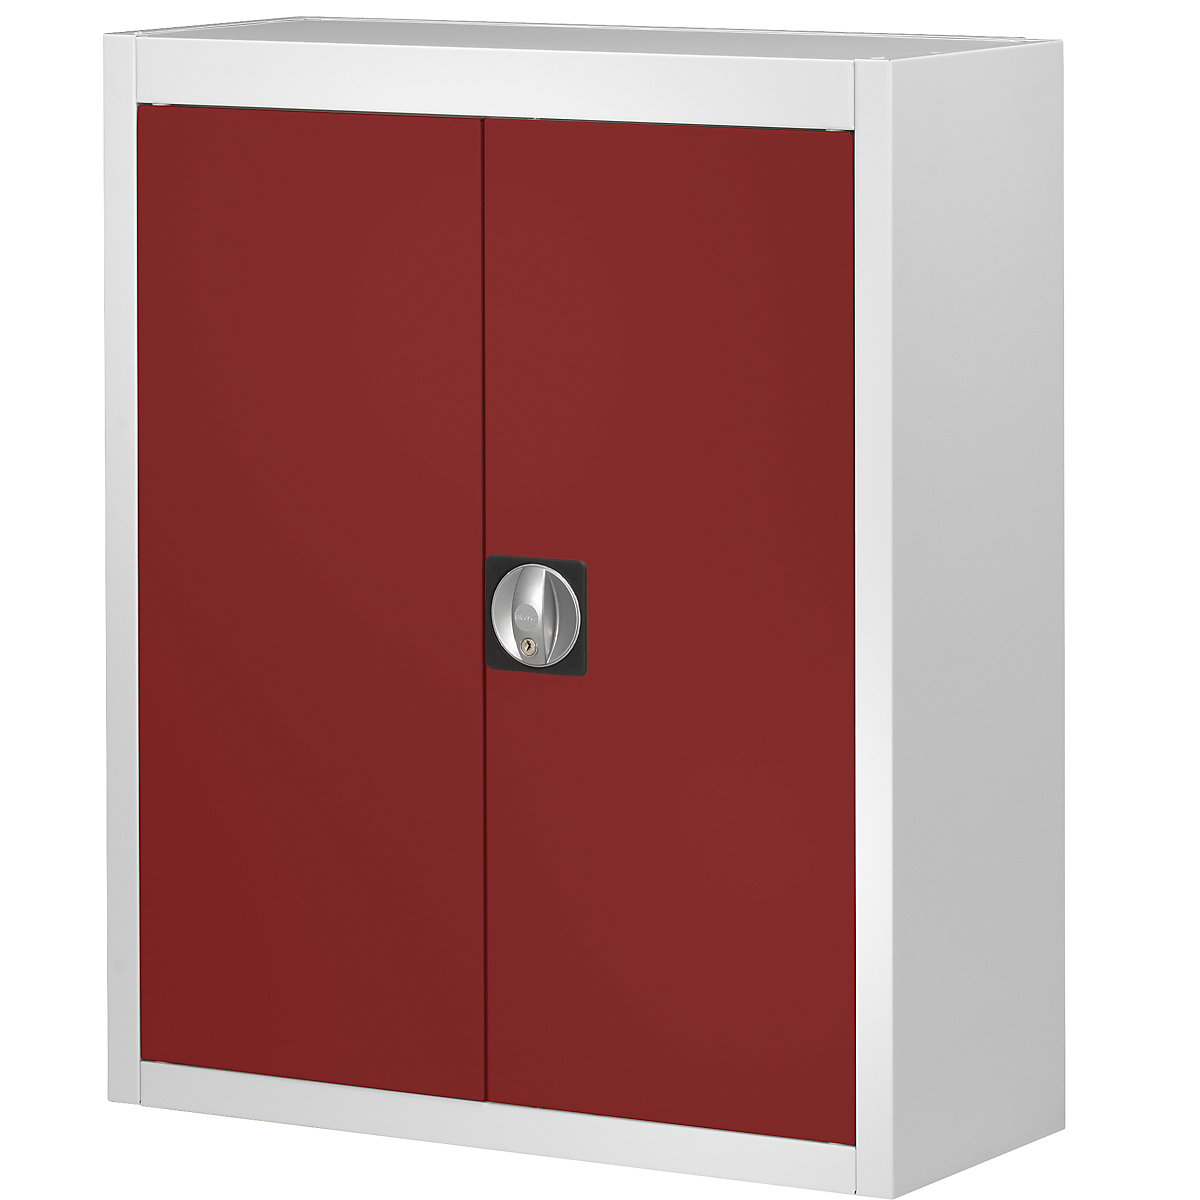 Skladová skříň, bez přepravek s viditelným obsahem – mauser, v x š x h 820 x 680 x 280 mm, dvoubarevná, korpus šedý, dveře červené, od 3 ks-5